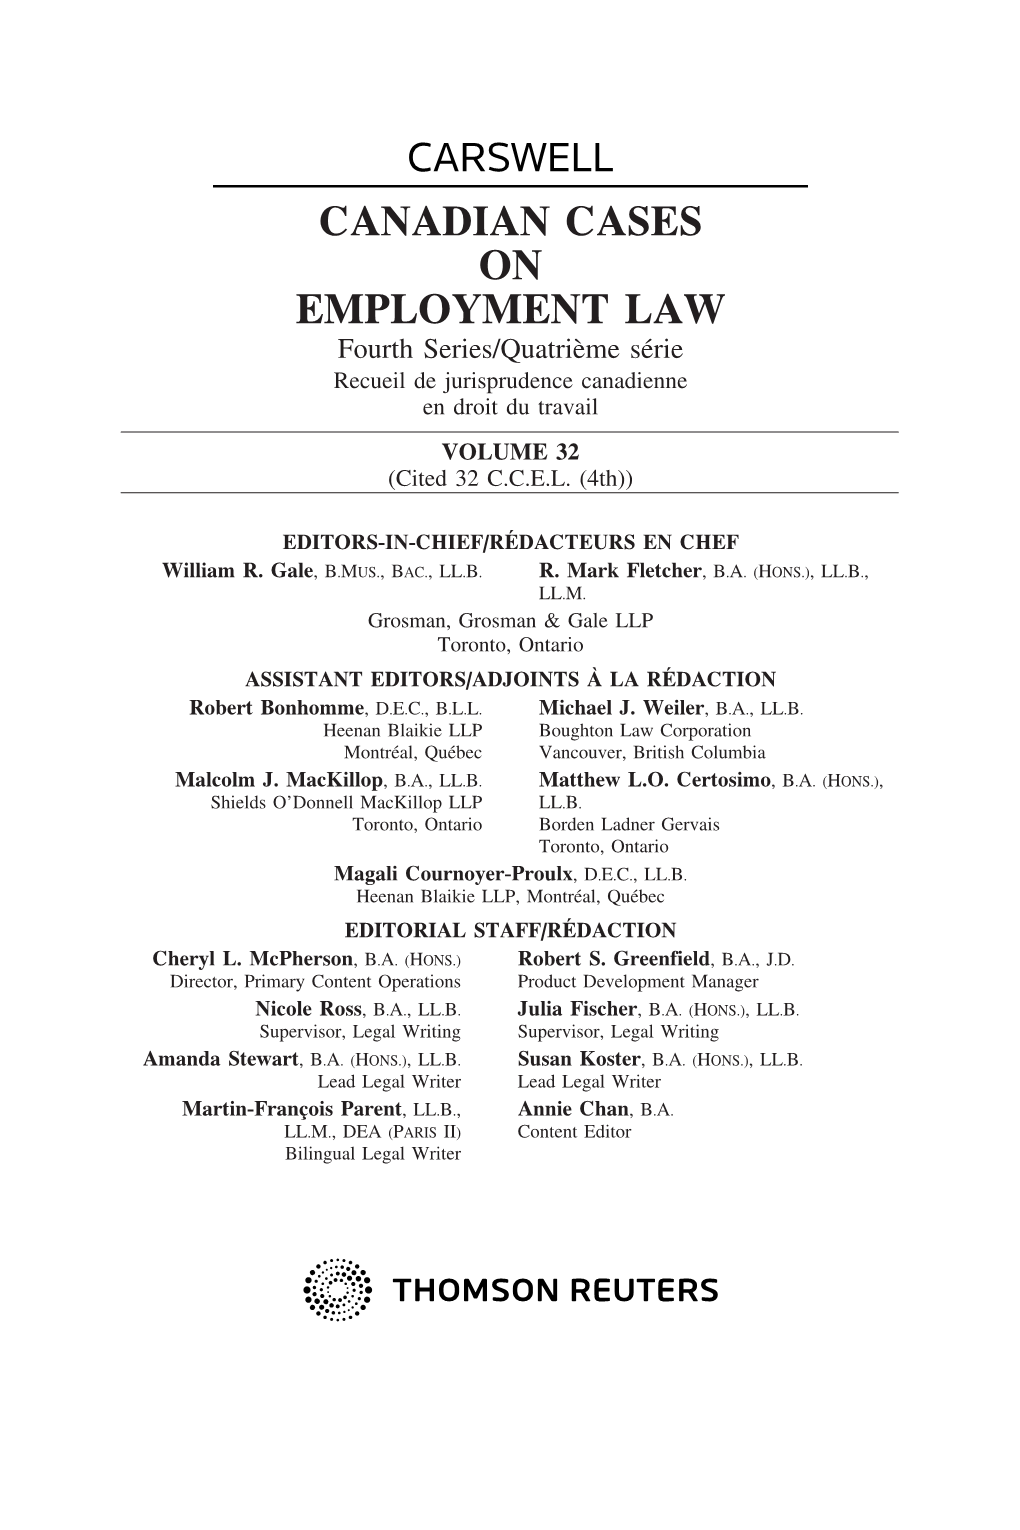 CANADIAN CASES on EMPLOYMENT LAW Fourth Series/Quatri`Eme S´Erie Recueil De Jurisprudence Canadienne En Droit Du Travail VOLUME 32 (Cited 32 C.C.E.L